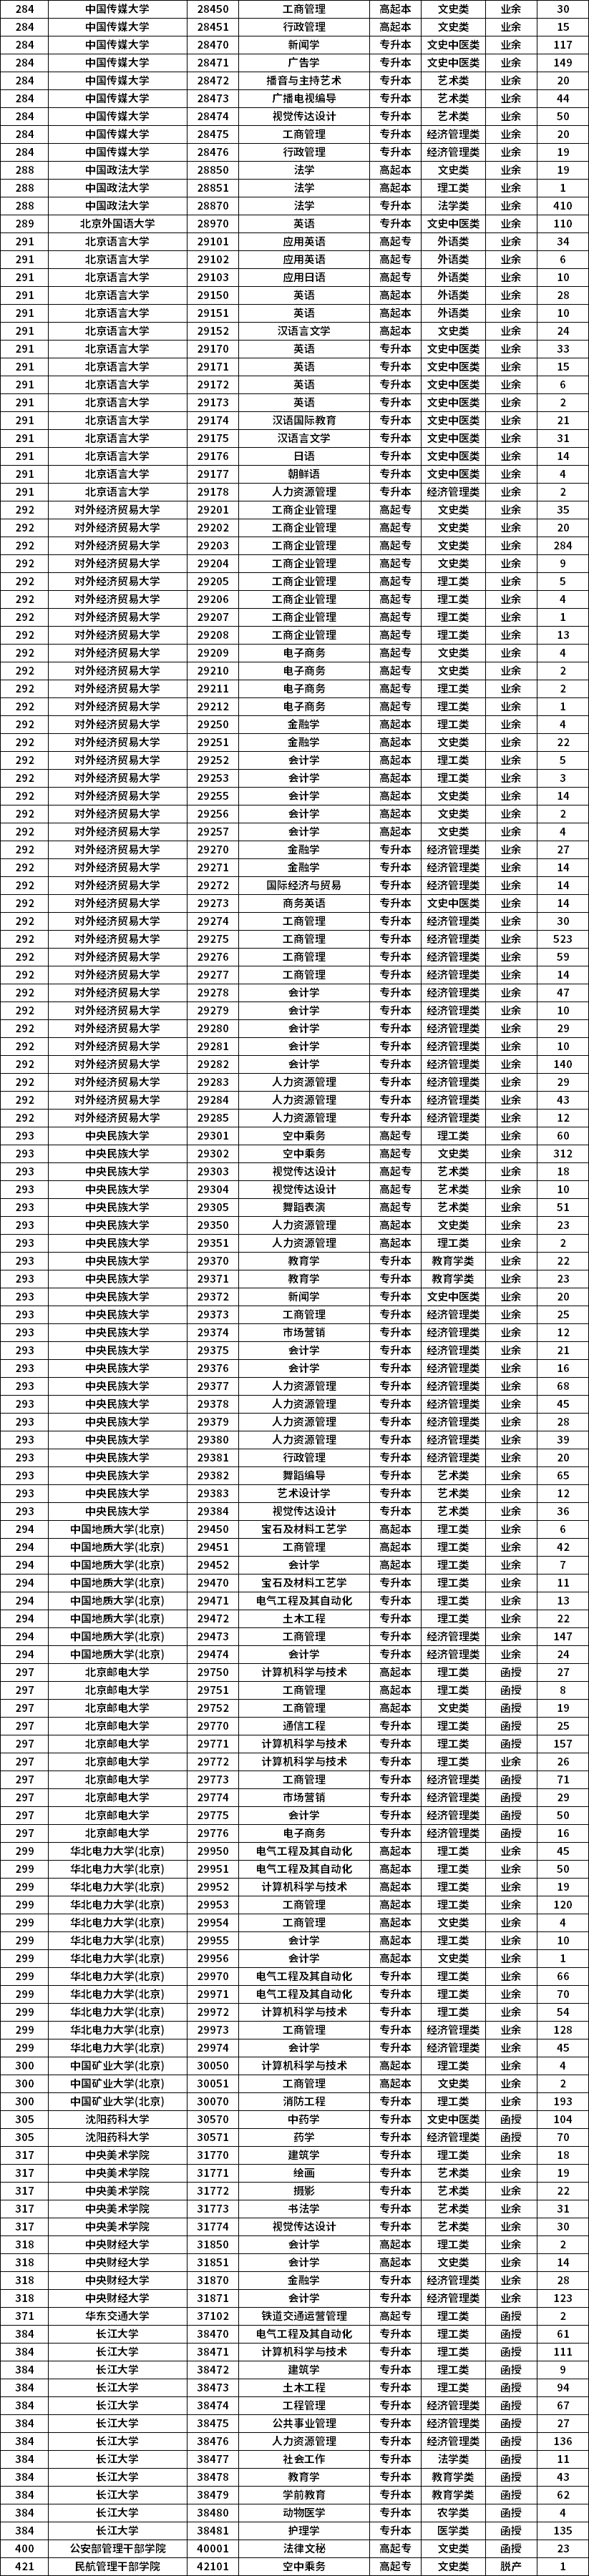 2021年北京市成人高考专业计划数统计表4.png